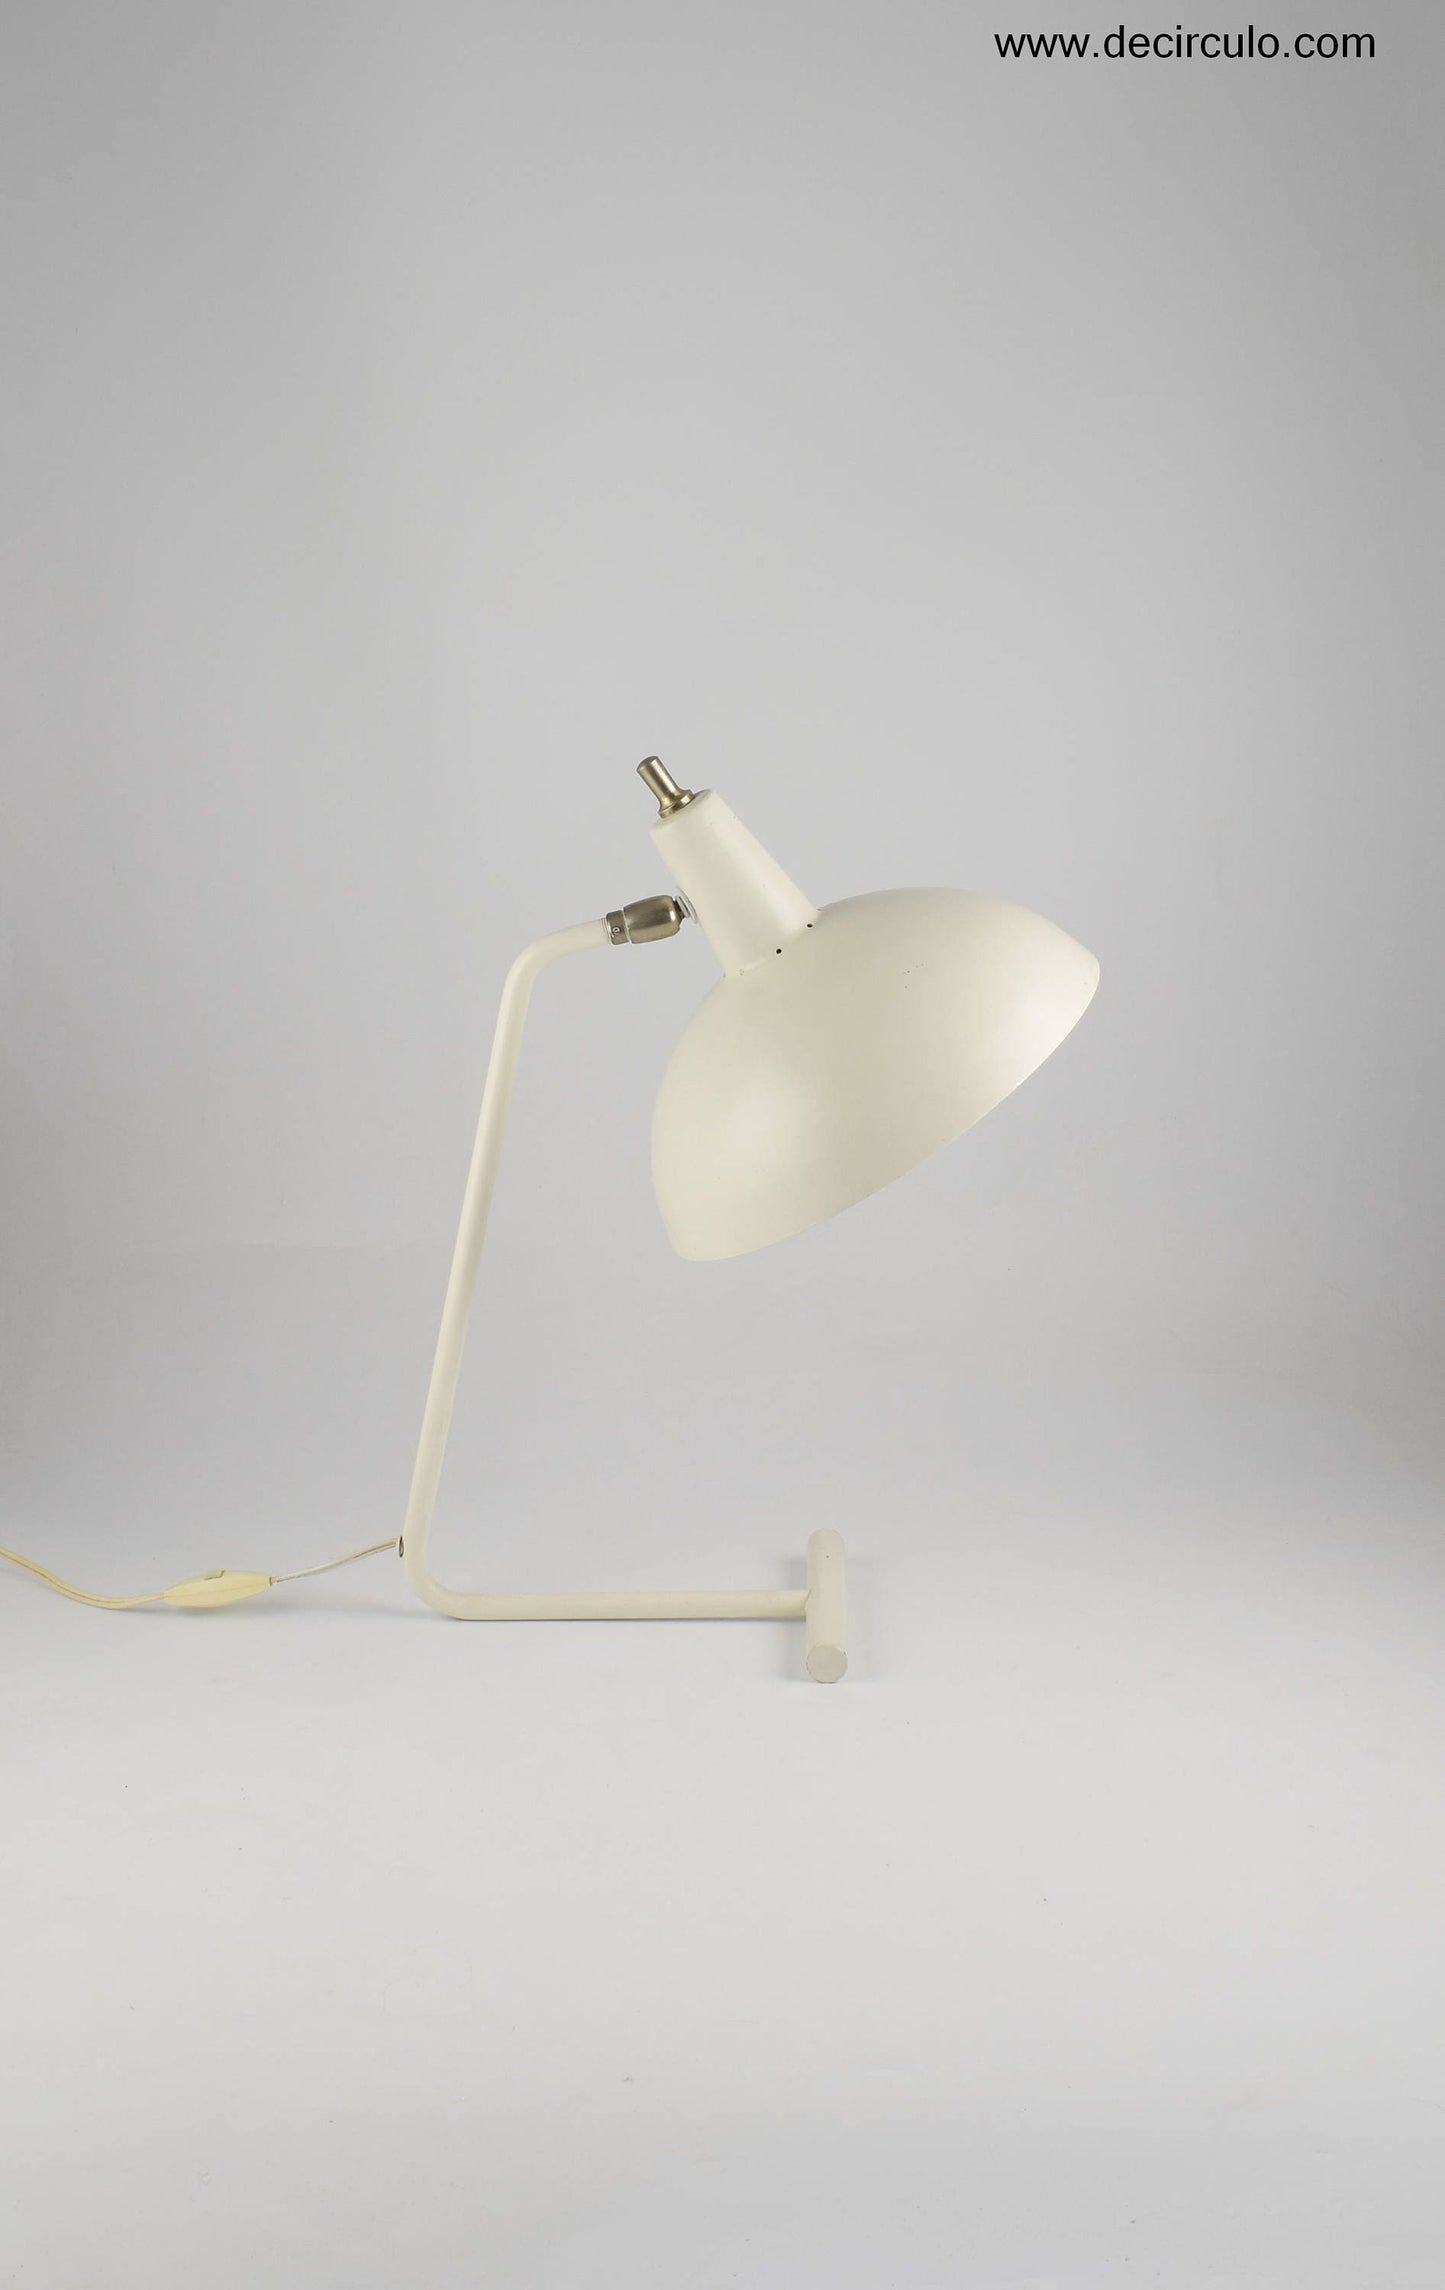 Anvia Almelo desklamp or table lamp by J.J.M. Hoogervorst model 6019